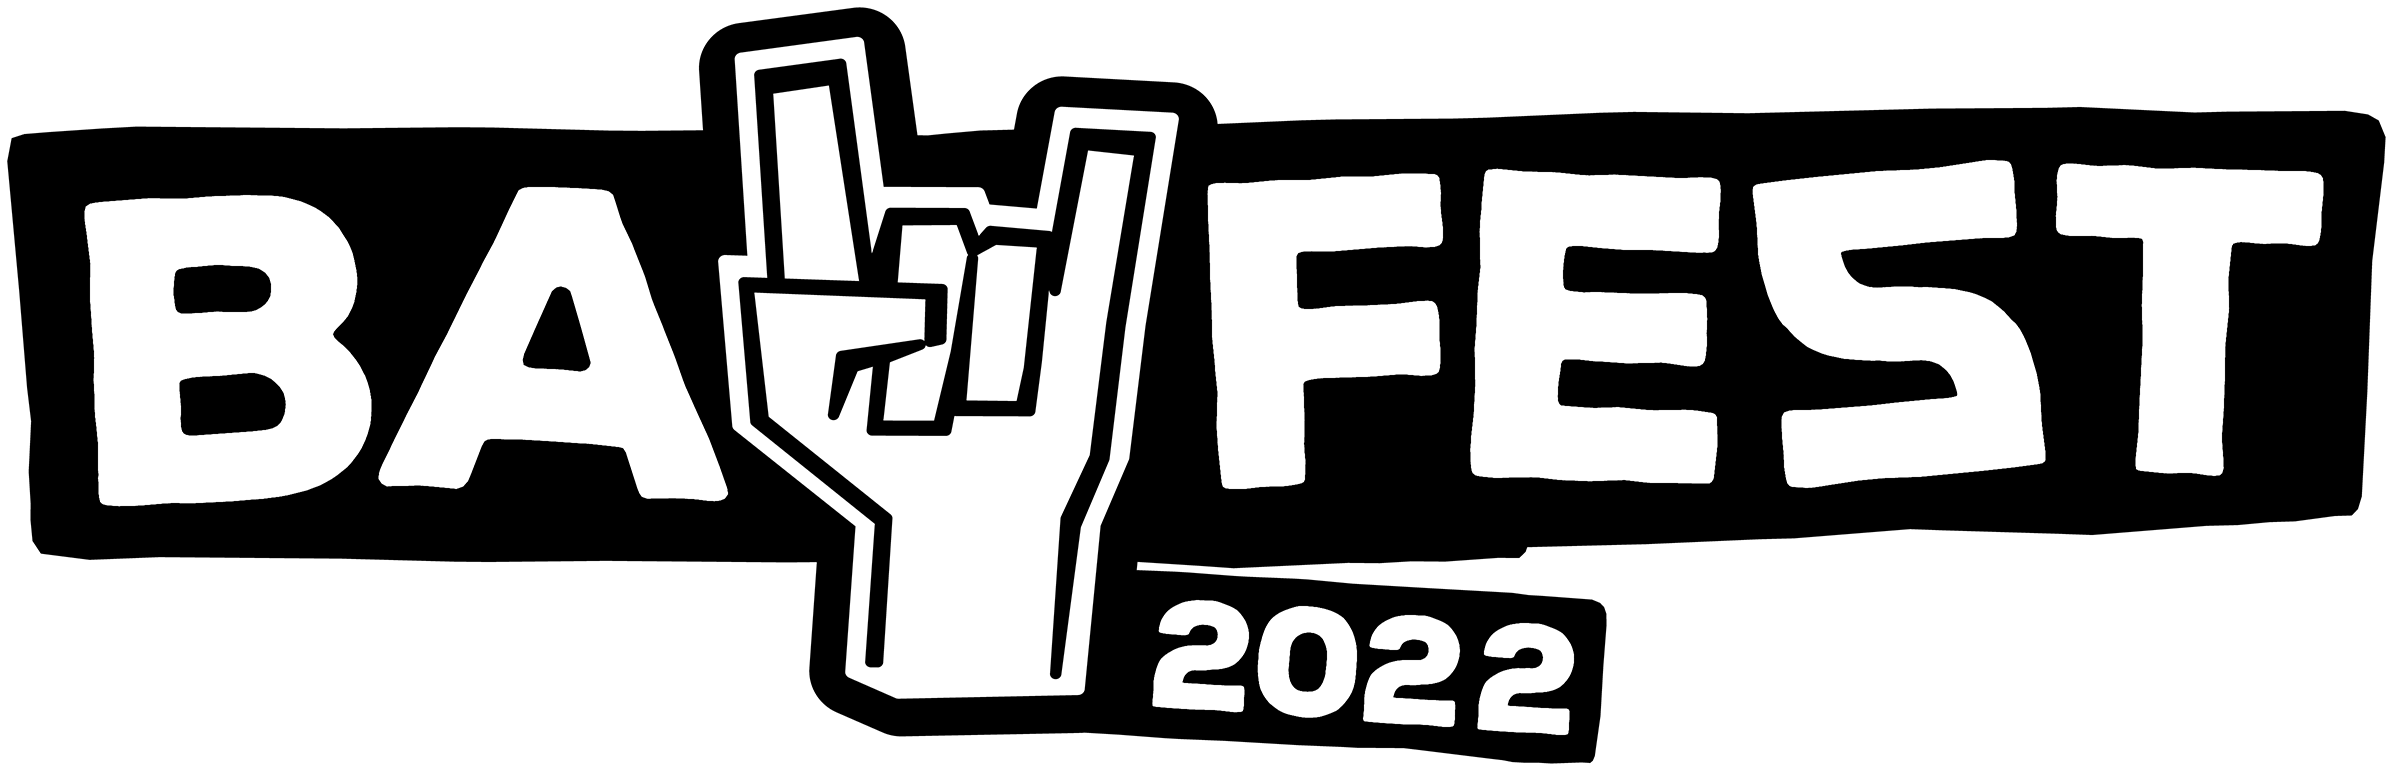  BAY FEST 2022